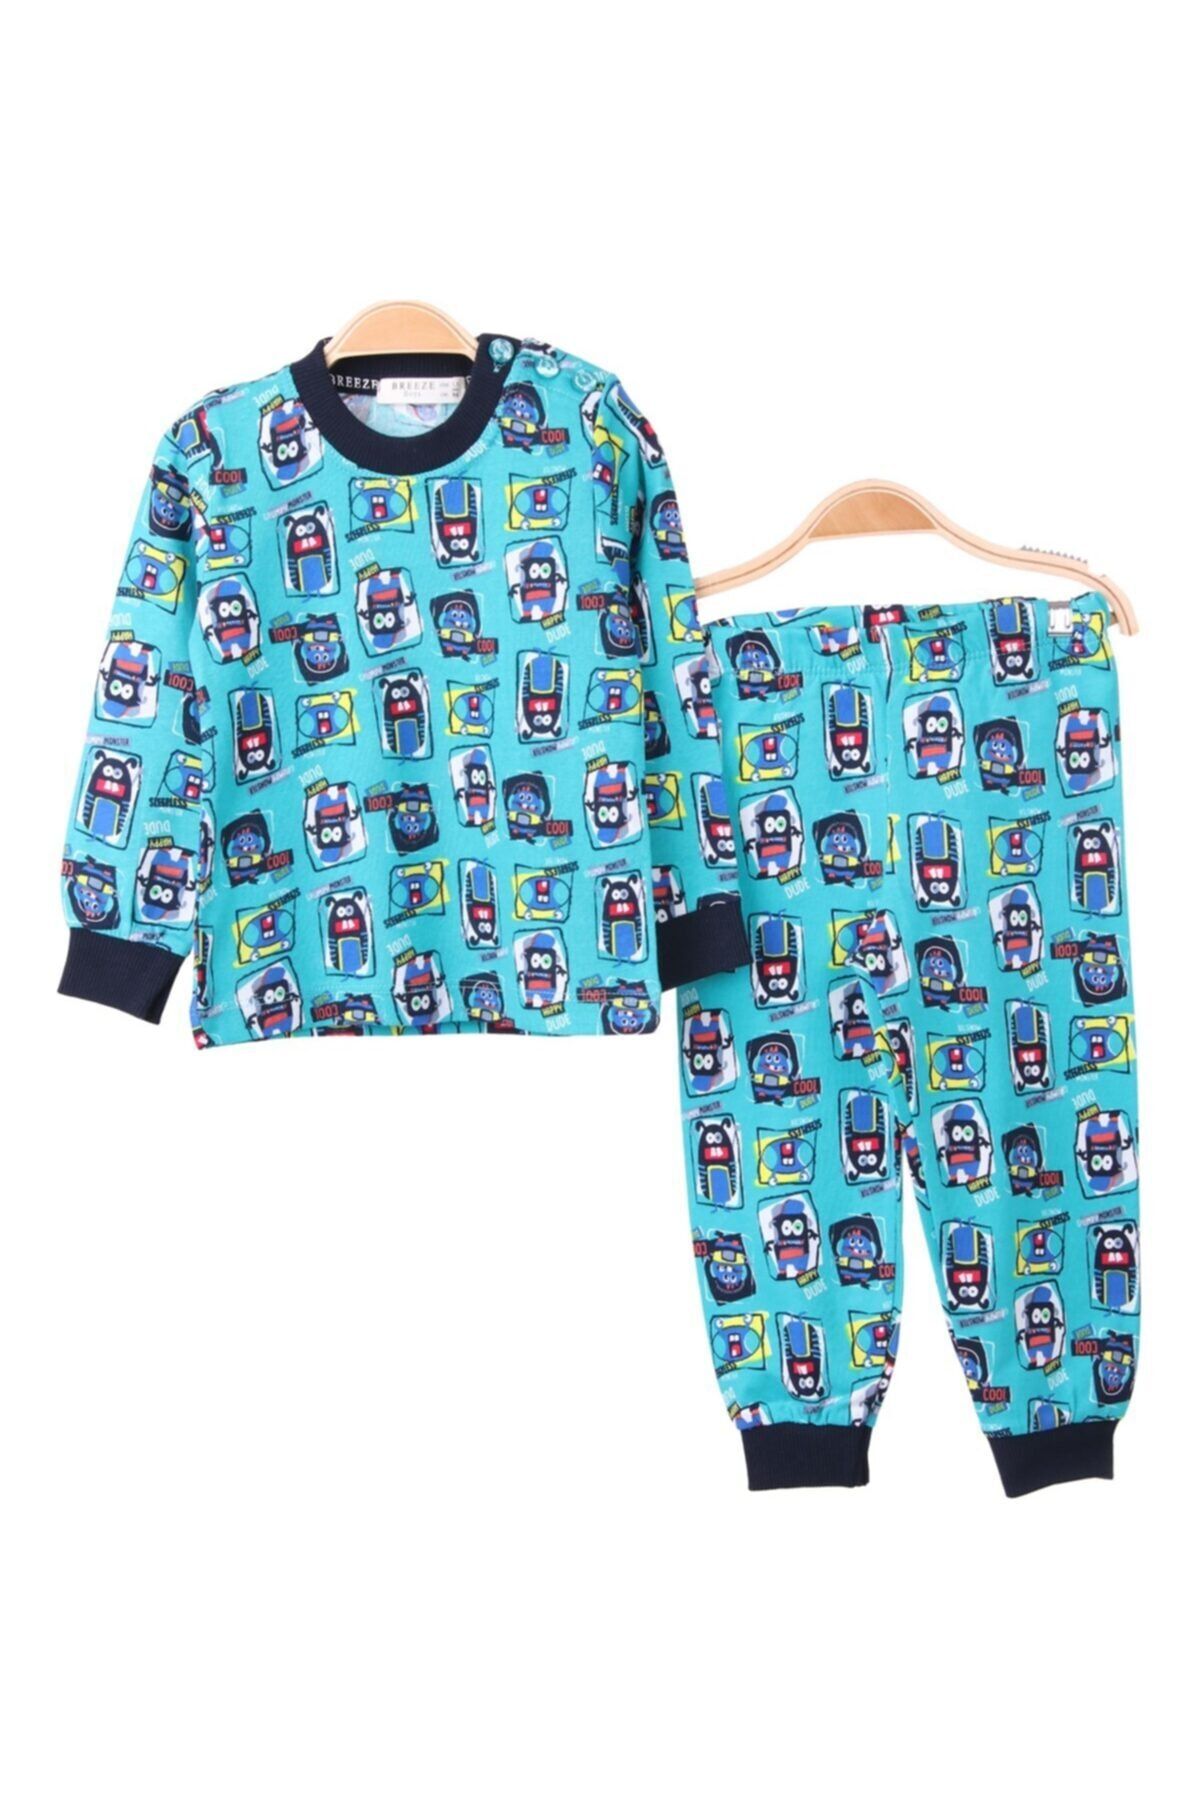 Breeze Erkek Bebek Pijama Takımı Desenli Turkuaz (1.5 Yaş)